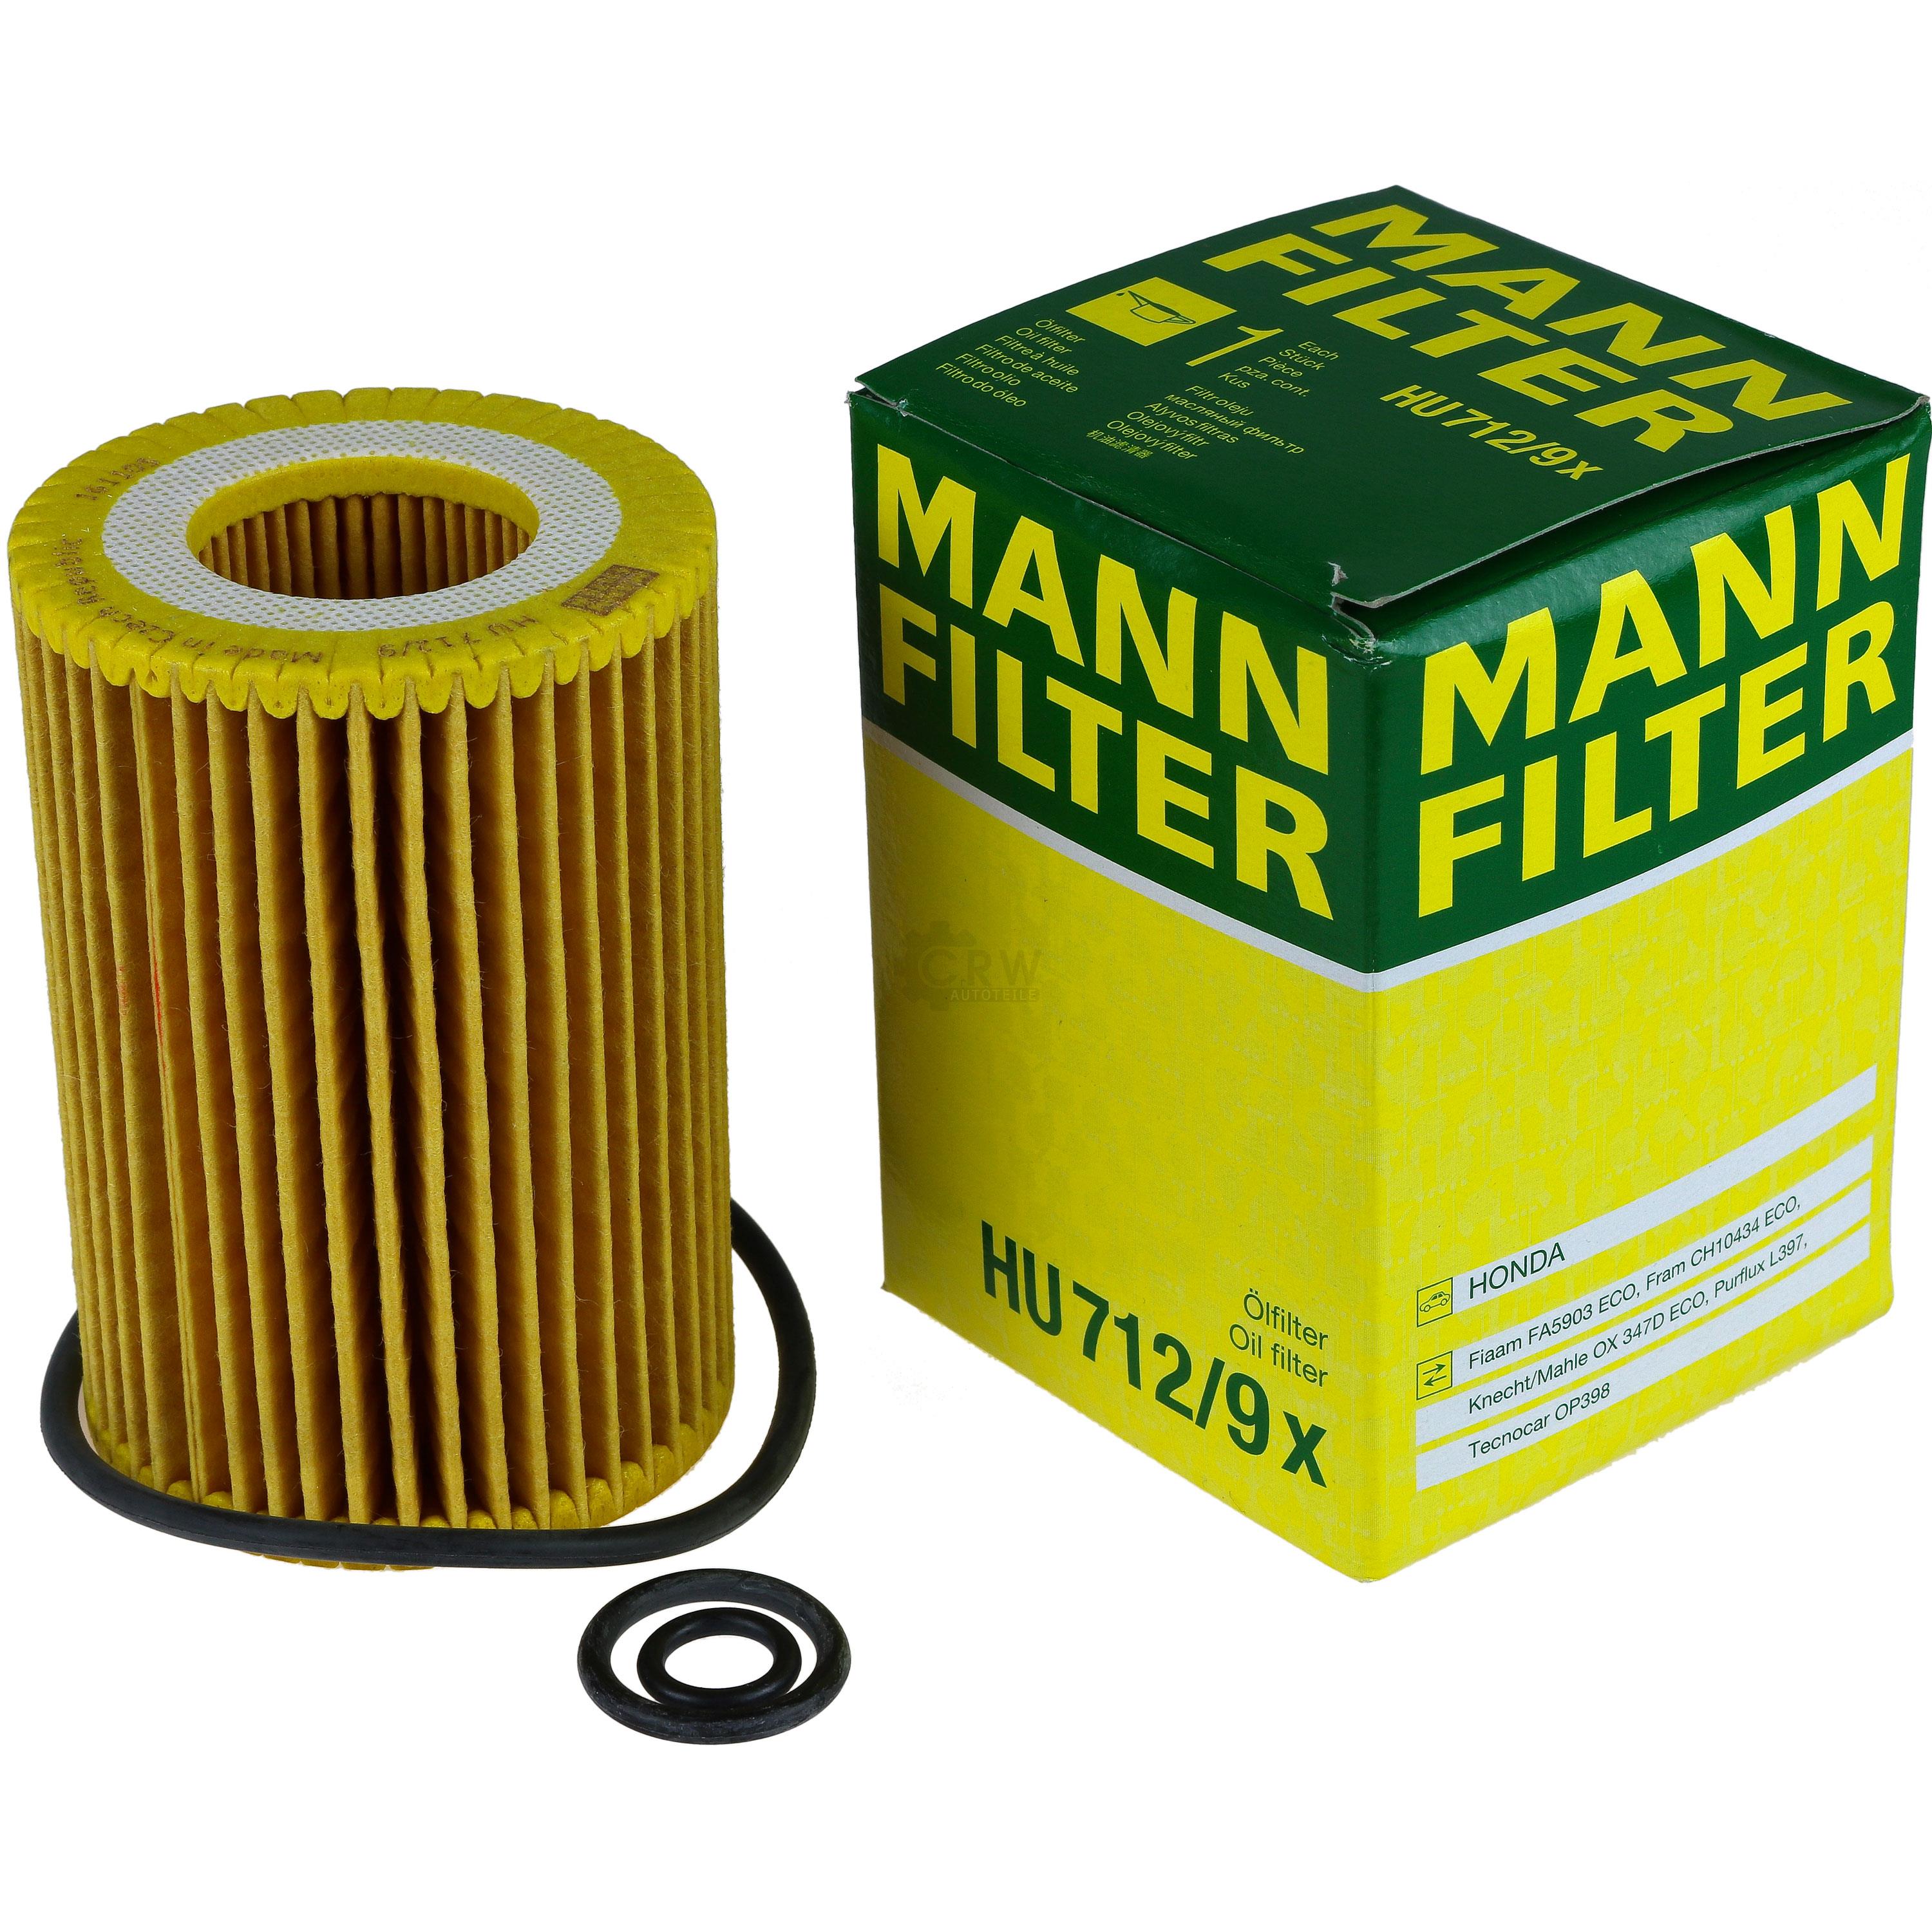 MANN-FILTER Ölfilter HU 712/9 x Oil Filter